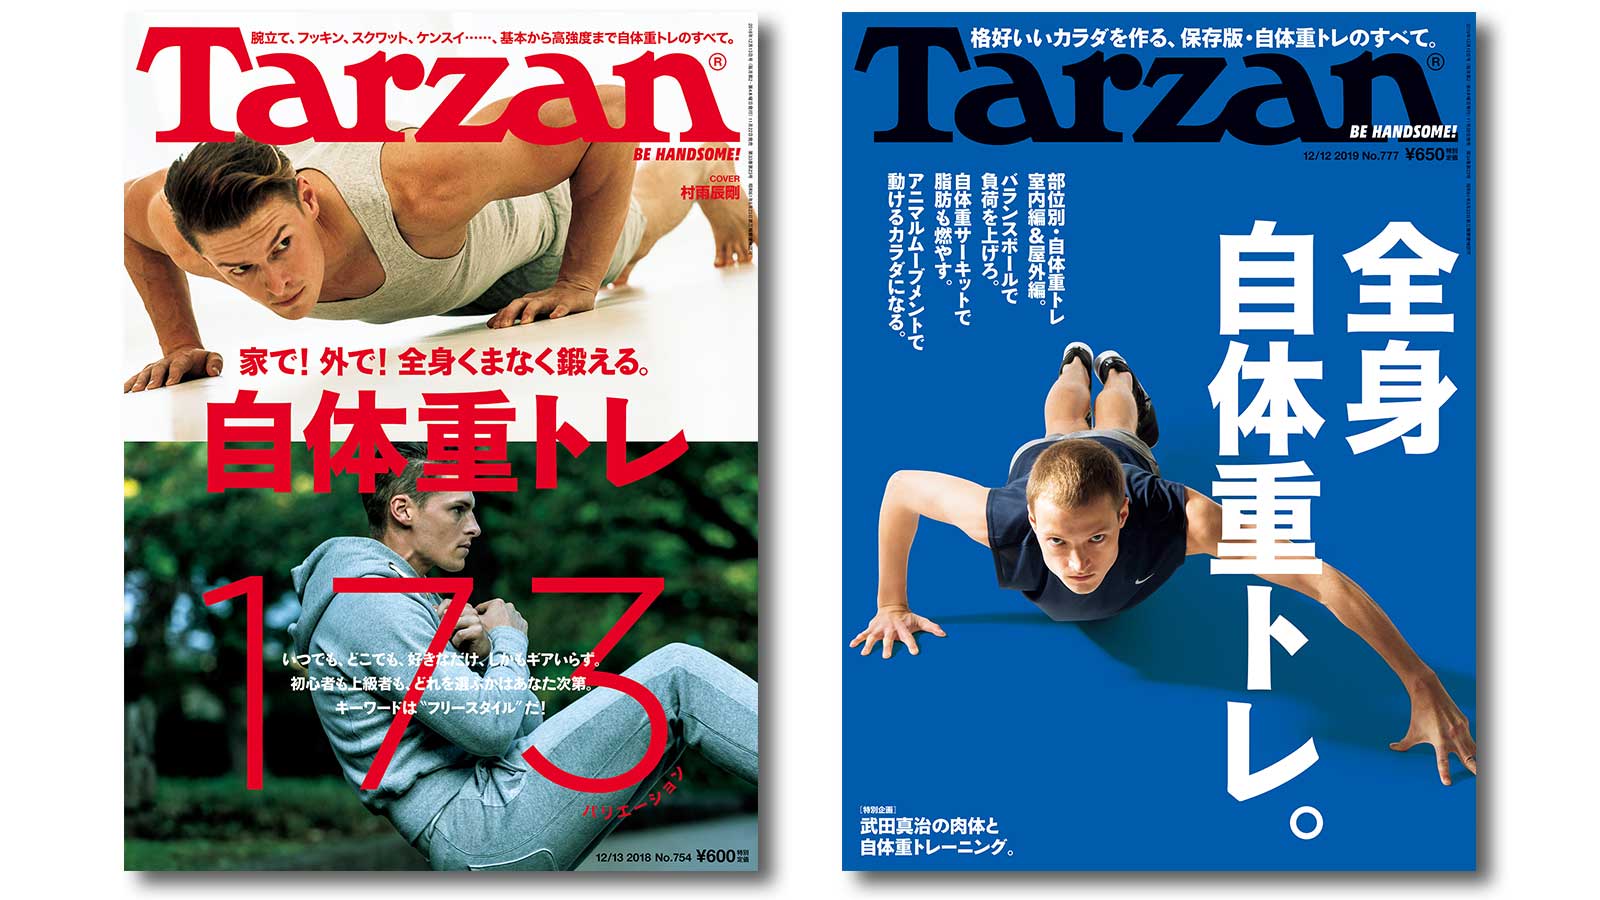 「自体重トレ」特集のバックナンバー2冊、 電子書籍版を無料ダウンロードできます！ Tarzan Web（ターザンウェブ）